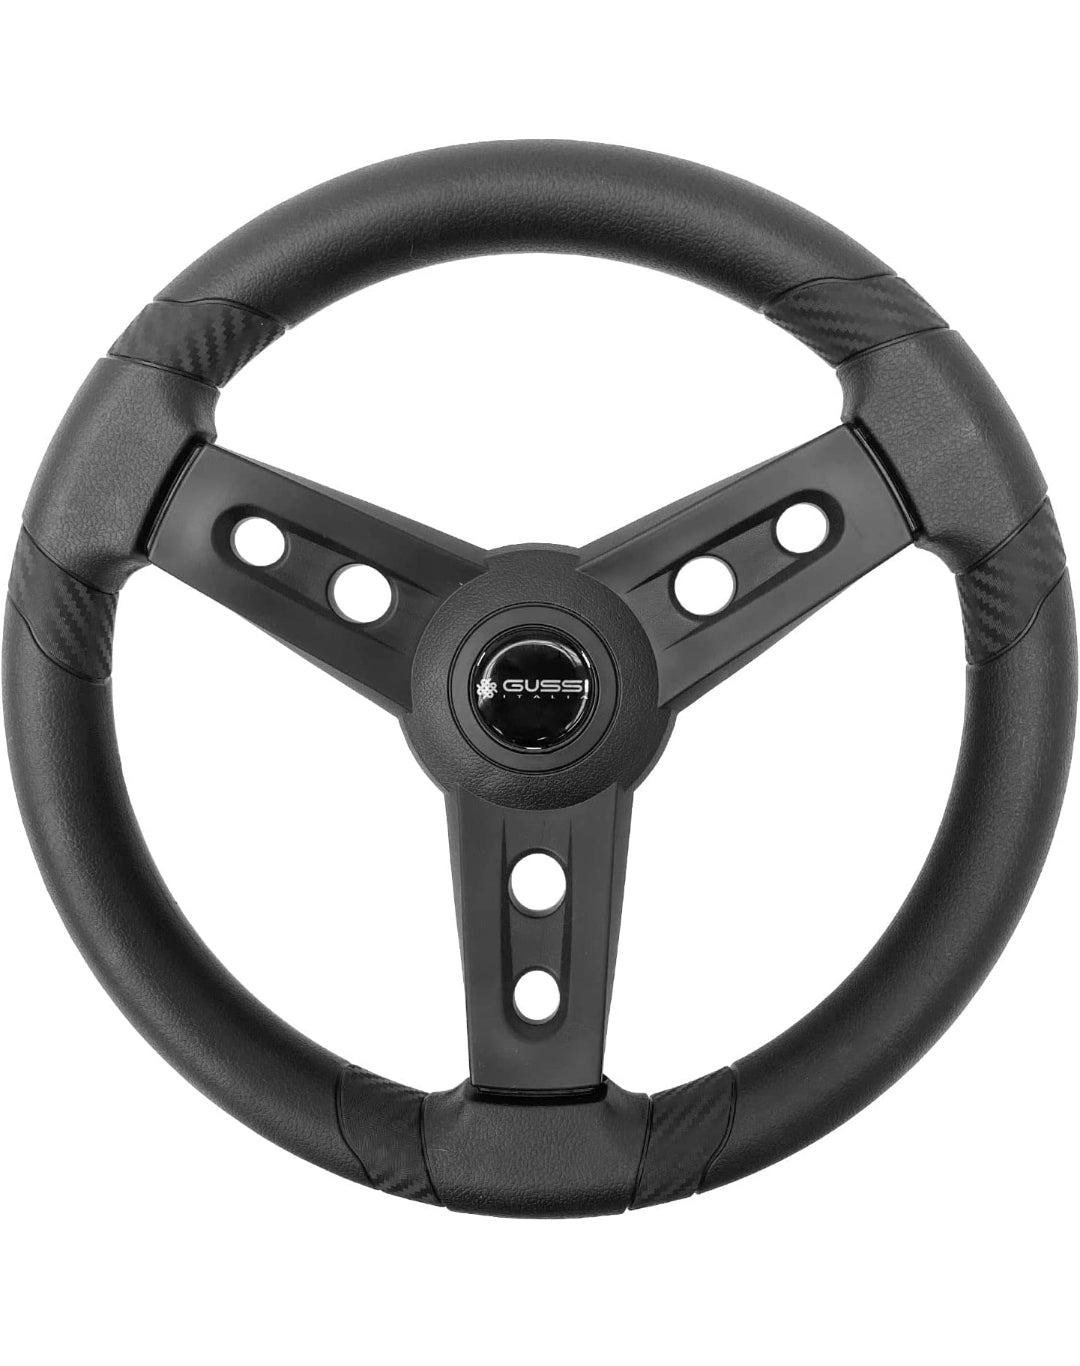 Gussi Italia E-Z-Go Golf Cart Steering Wheel - Lagana Premium Steering Wheel for EZ-GO